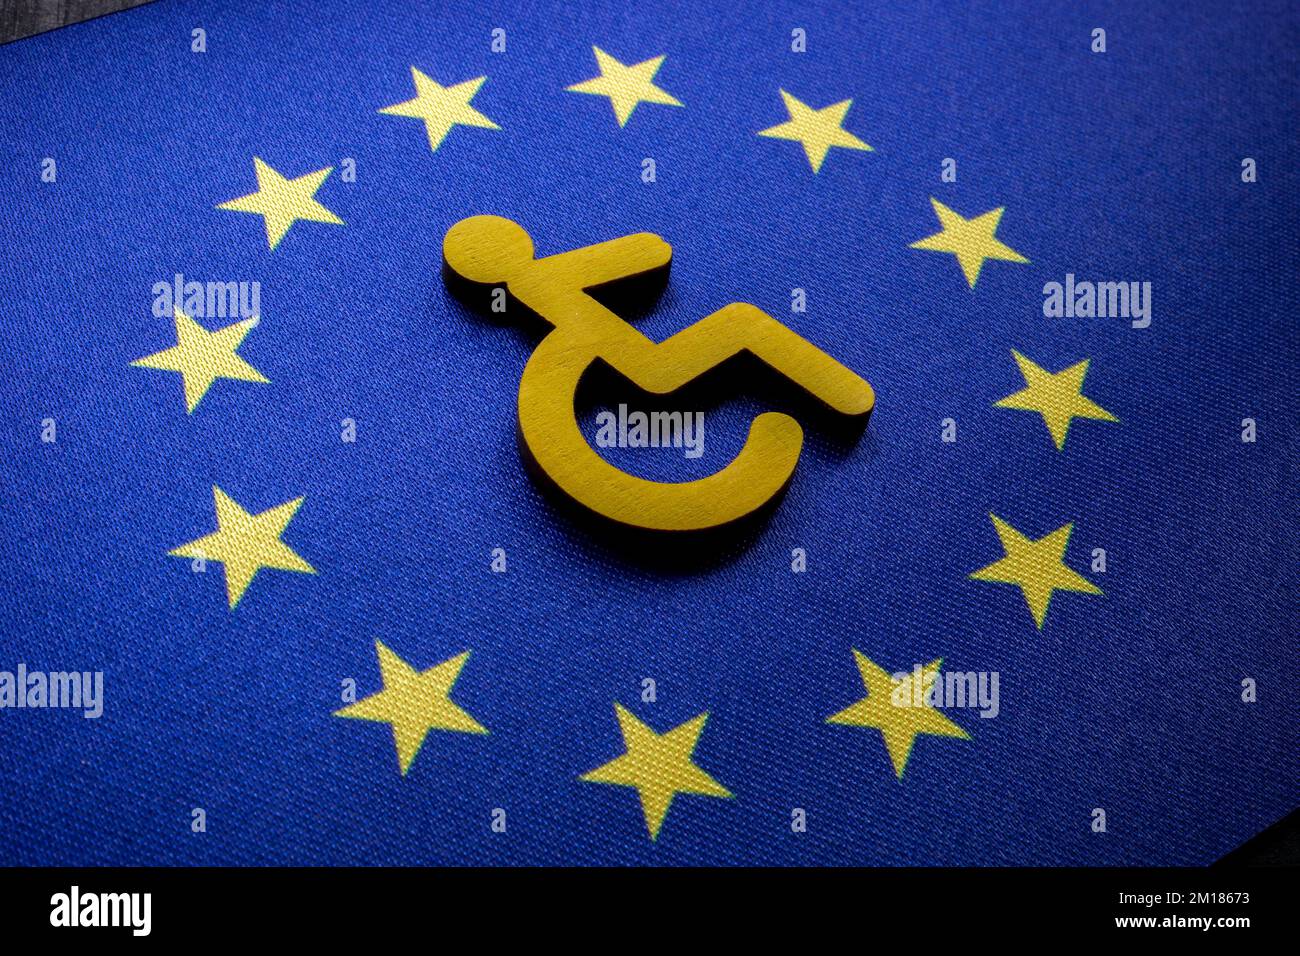 La personne handicapée signe sur le drapeau de l'UE. Concept de loi européenne sur l'accessibilité. Banque D'Images